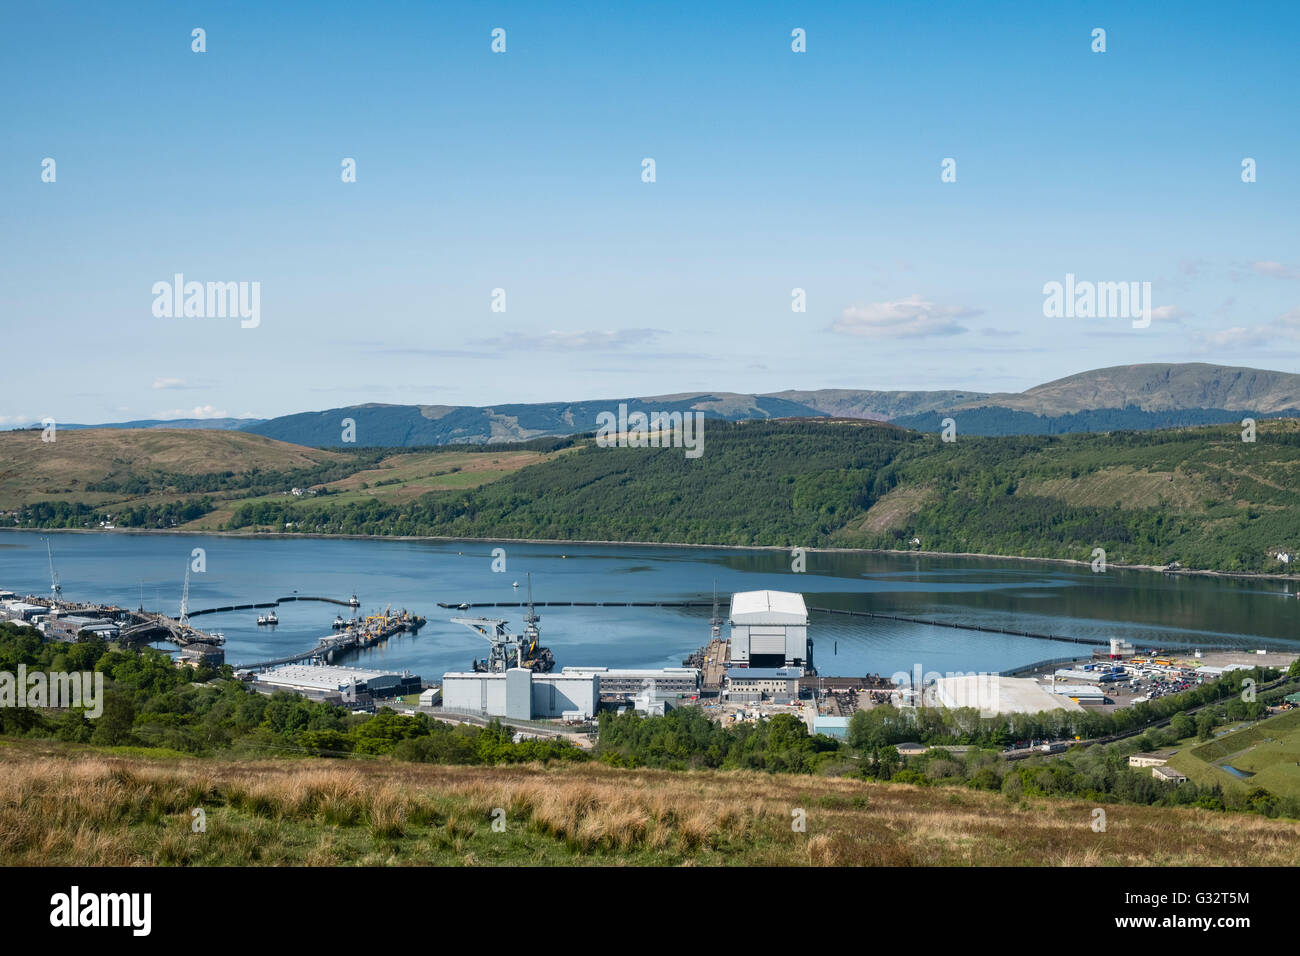 Ansicht der Royal Navy Base, Clyde, in Faslane am Gare Loch in Argyll und Bute Schottland Vereinigtes Königreich Stockfoto